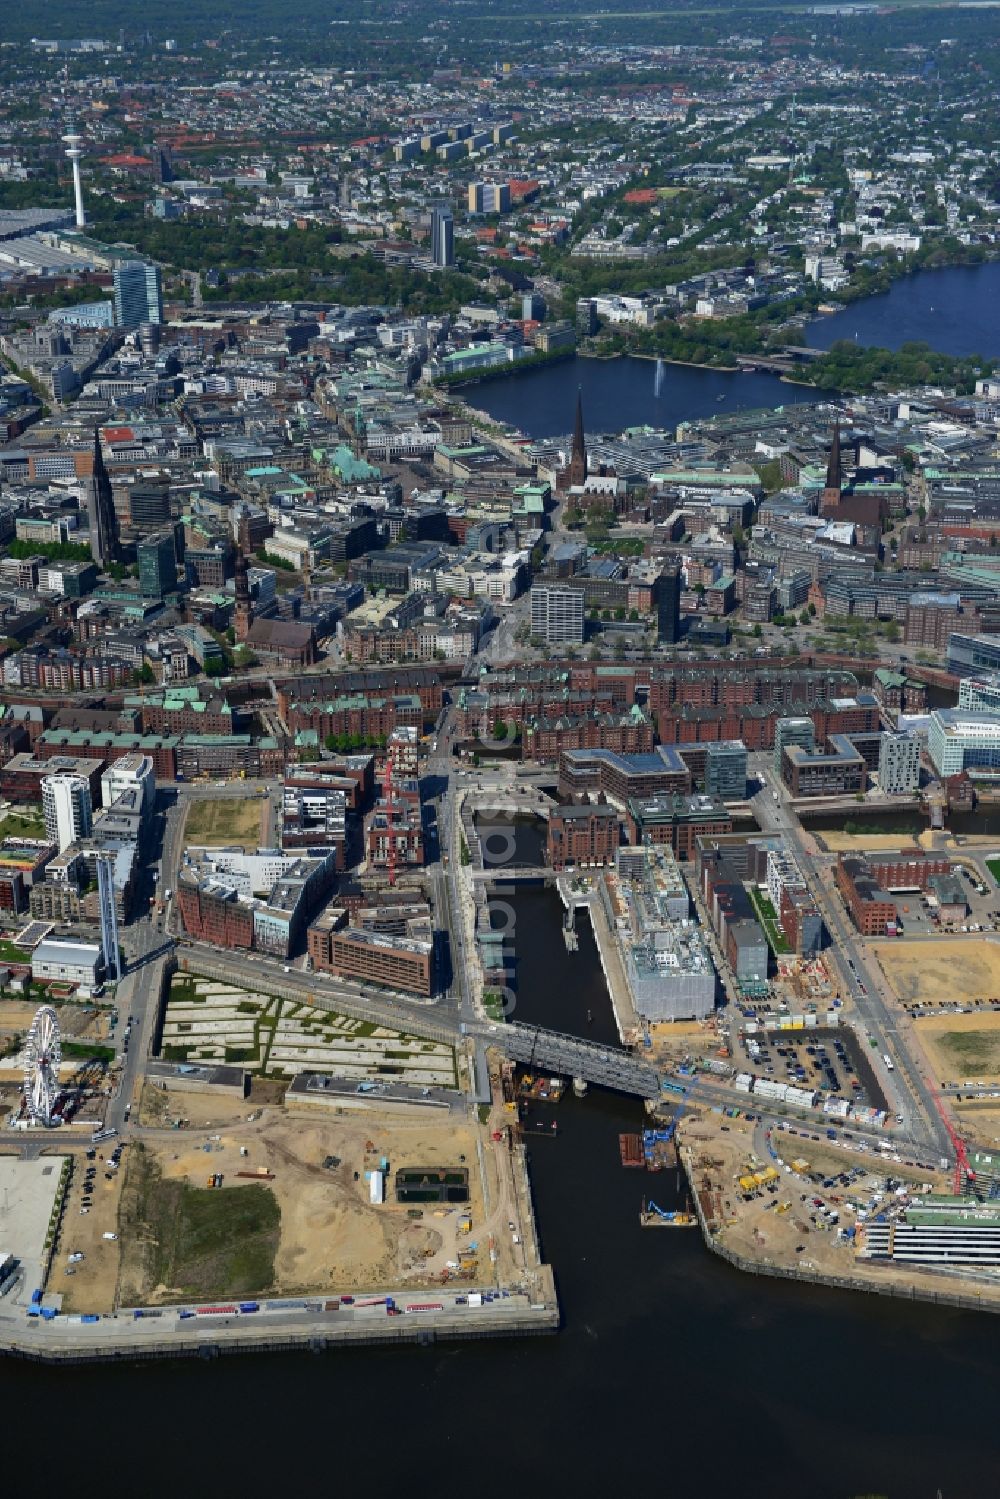 Luftbild Hamburg - Baustellen zur Neugestaltung und Umnutzung des Areales Brooktorhafen, Überseequartier in der HafenCity in Hamburg